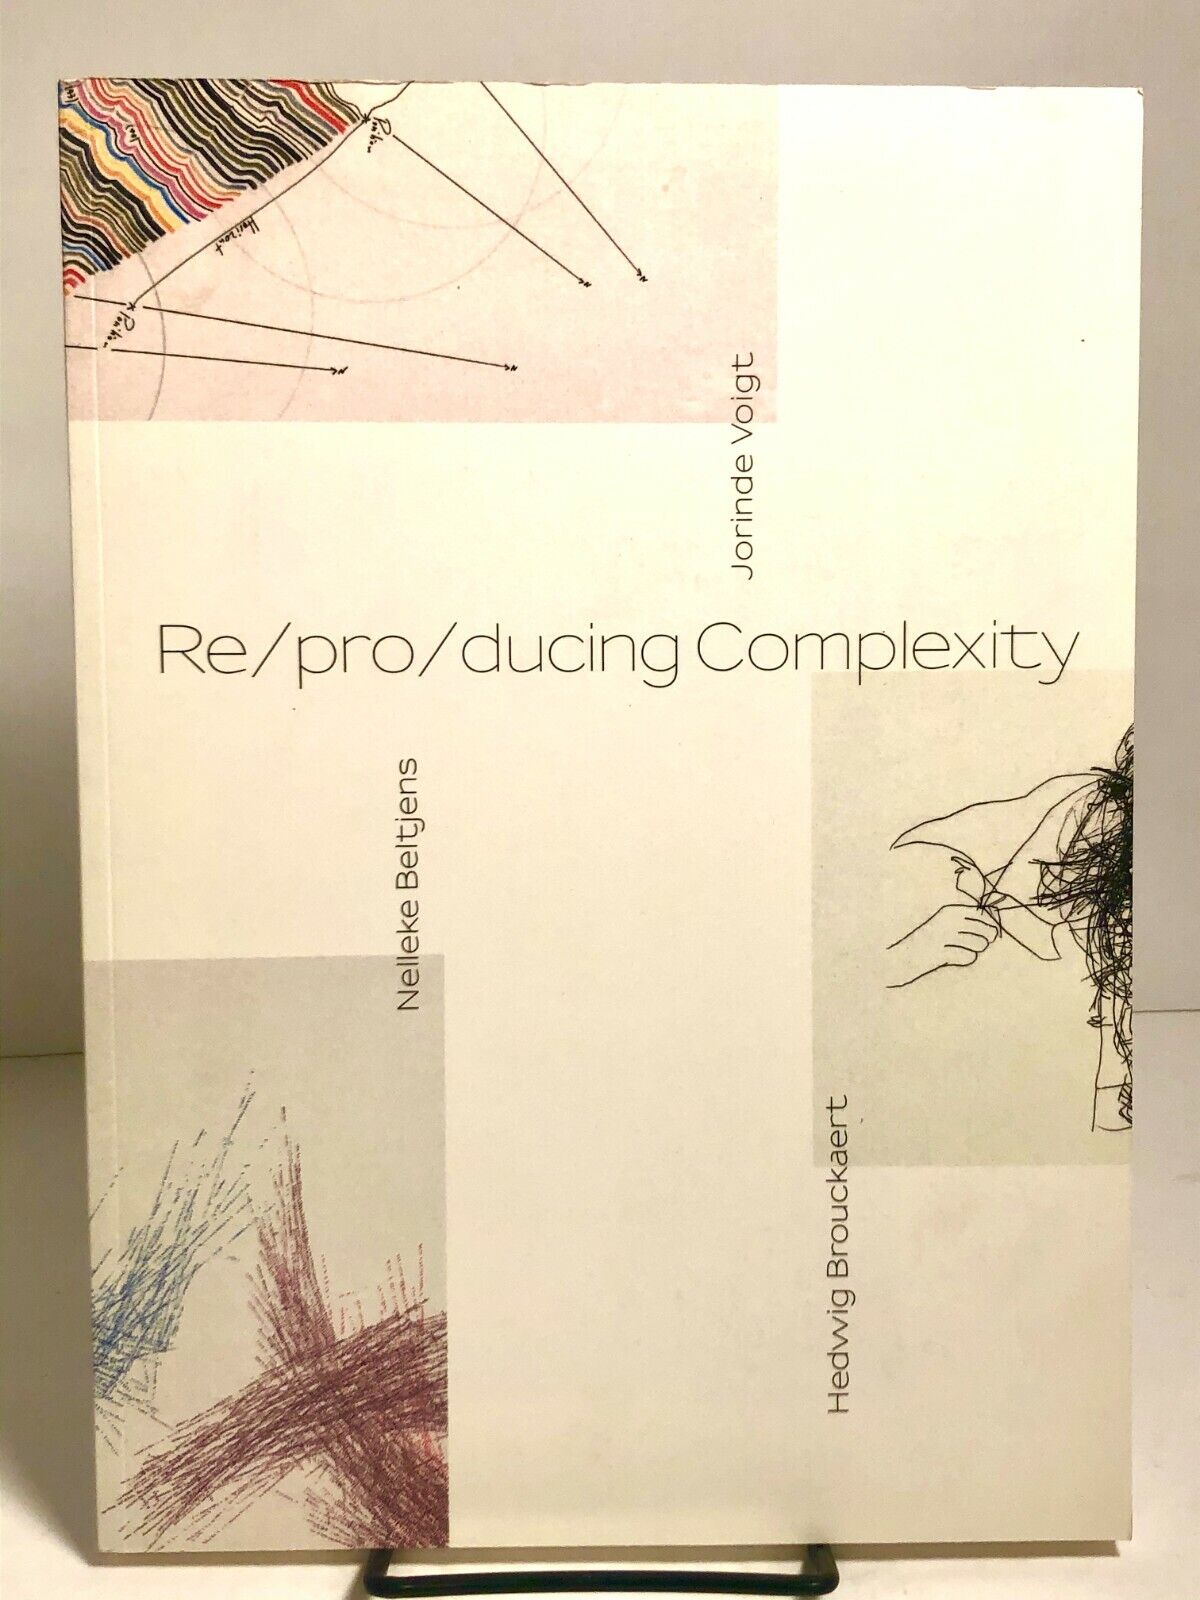 Re/pro/ducing Complexity, exhibit catalog 2012, Beltjens, Voight, Brouckaert